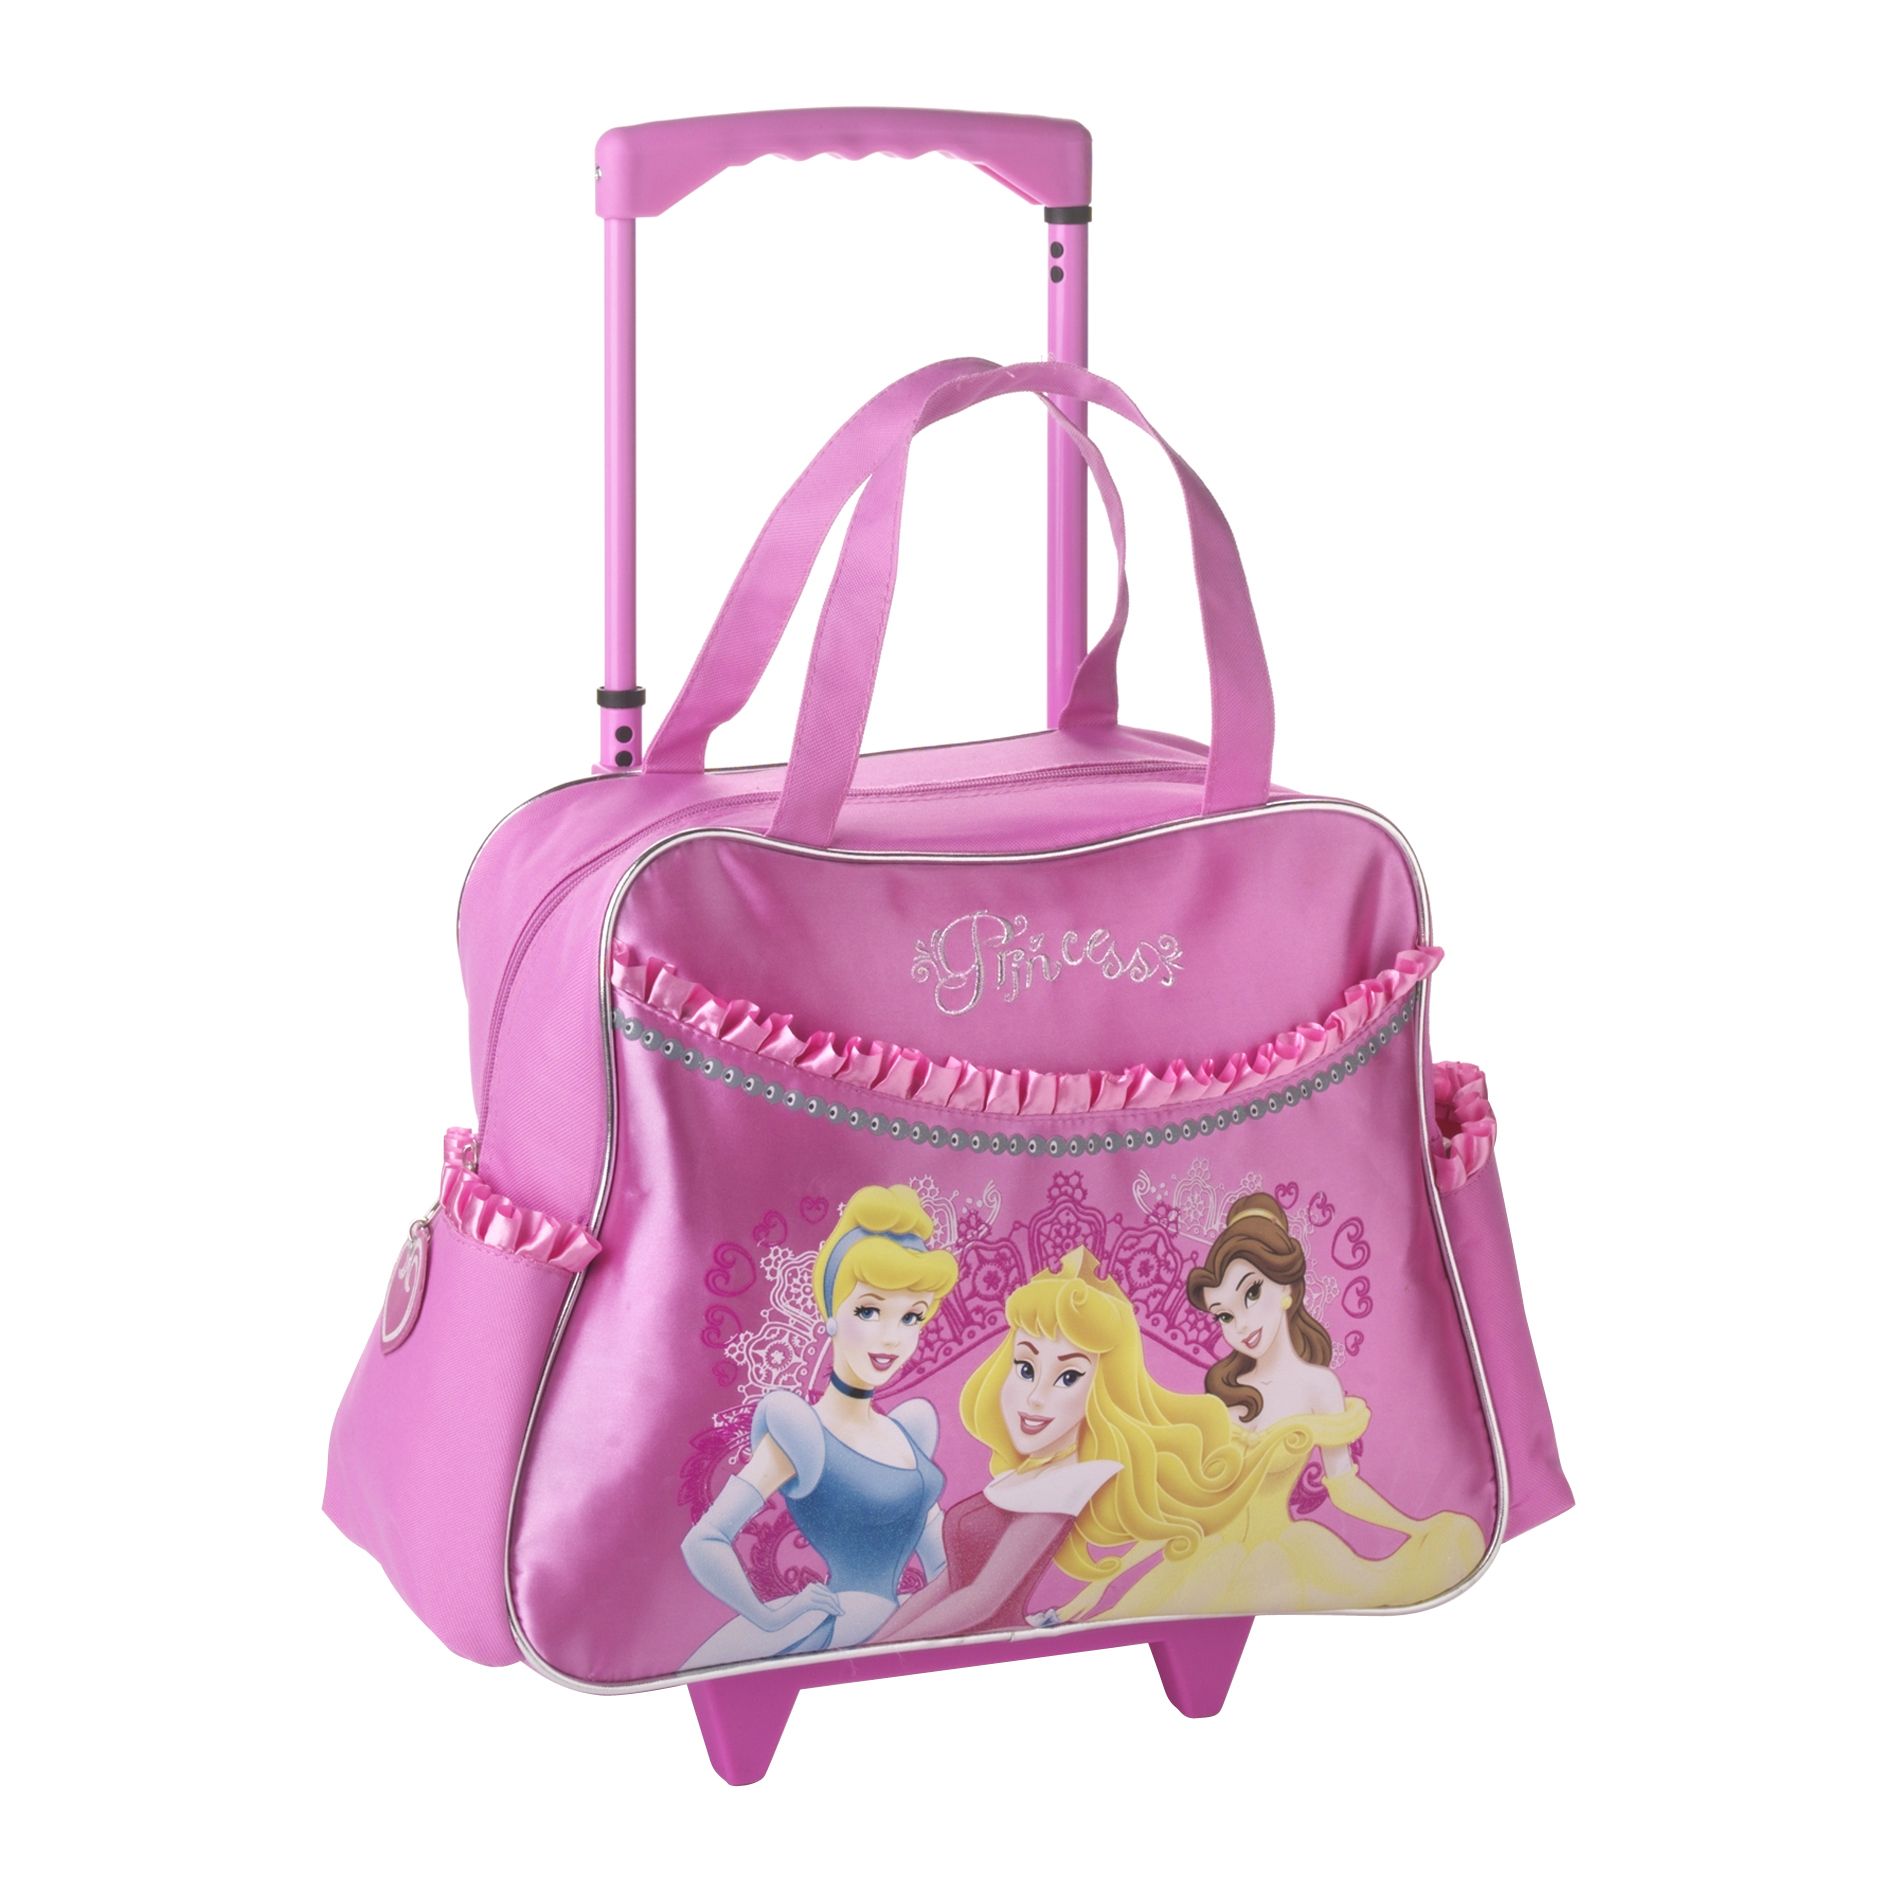 Disney Girl's Duffle Bag